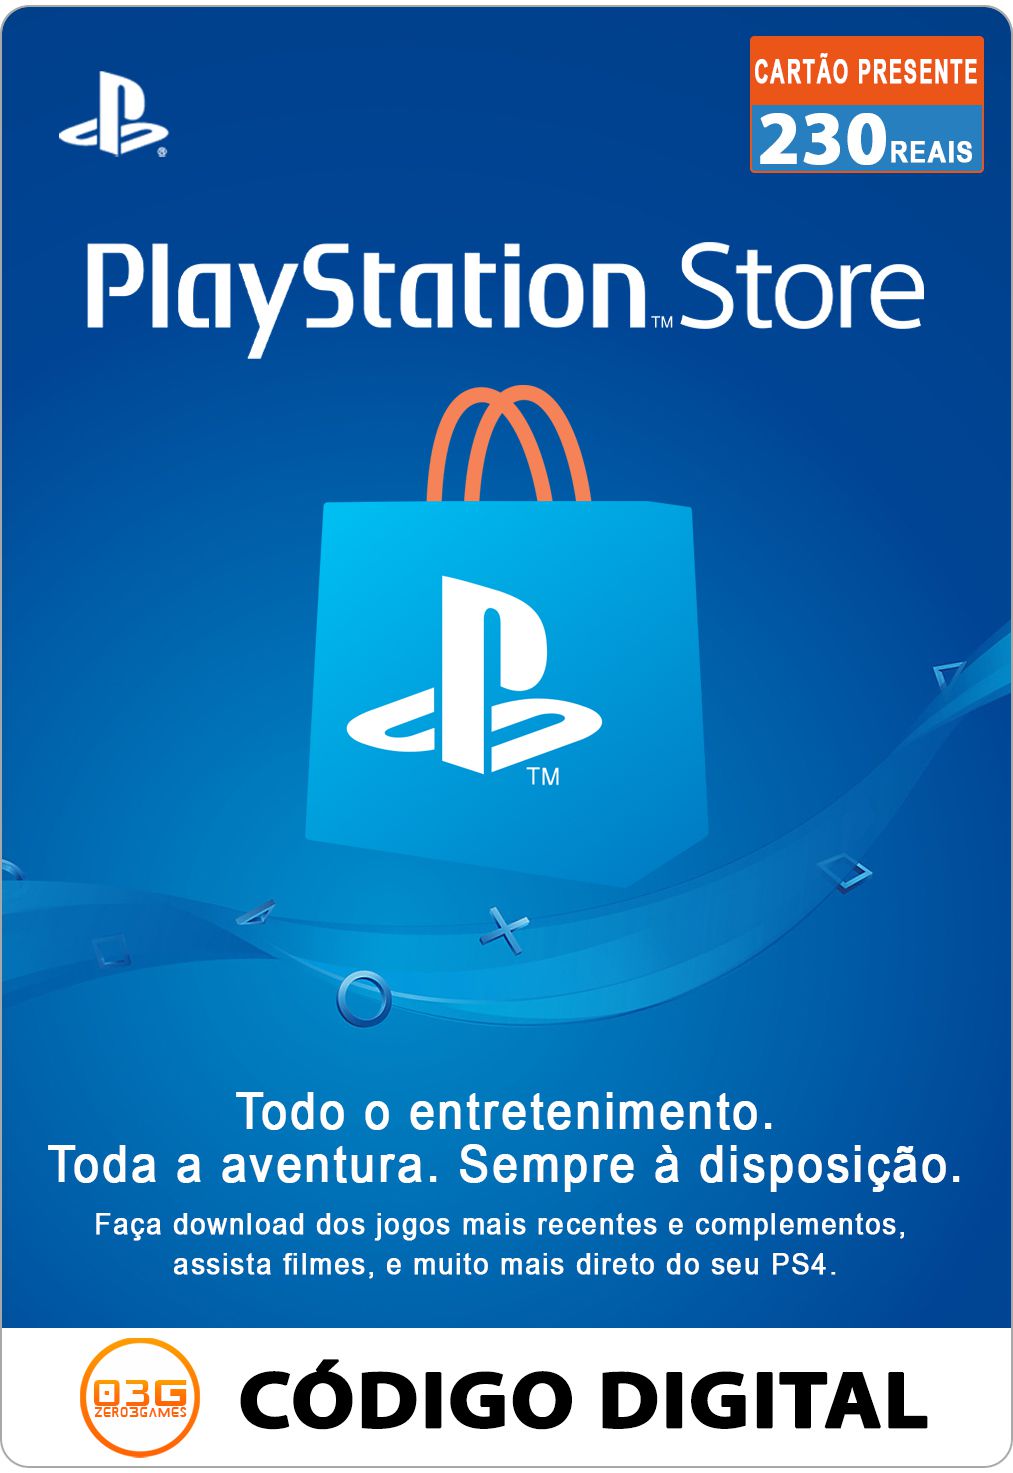 Recarga de jogos com gift card para PlayStation e Xbox com PagBank